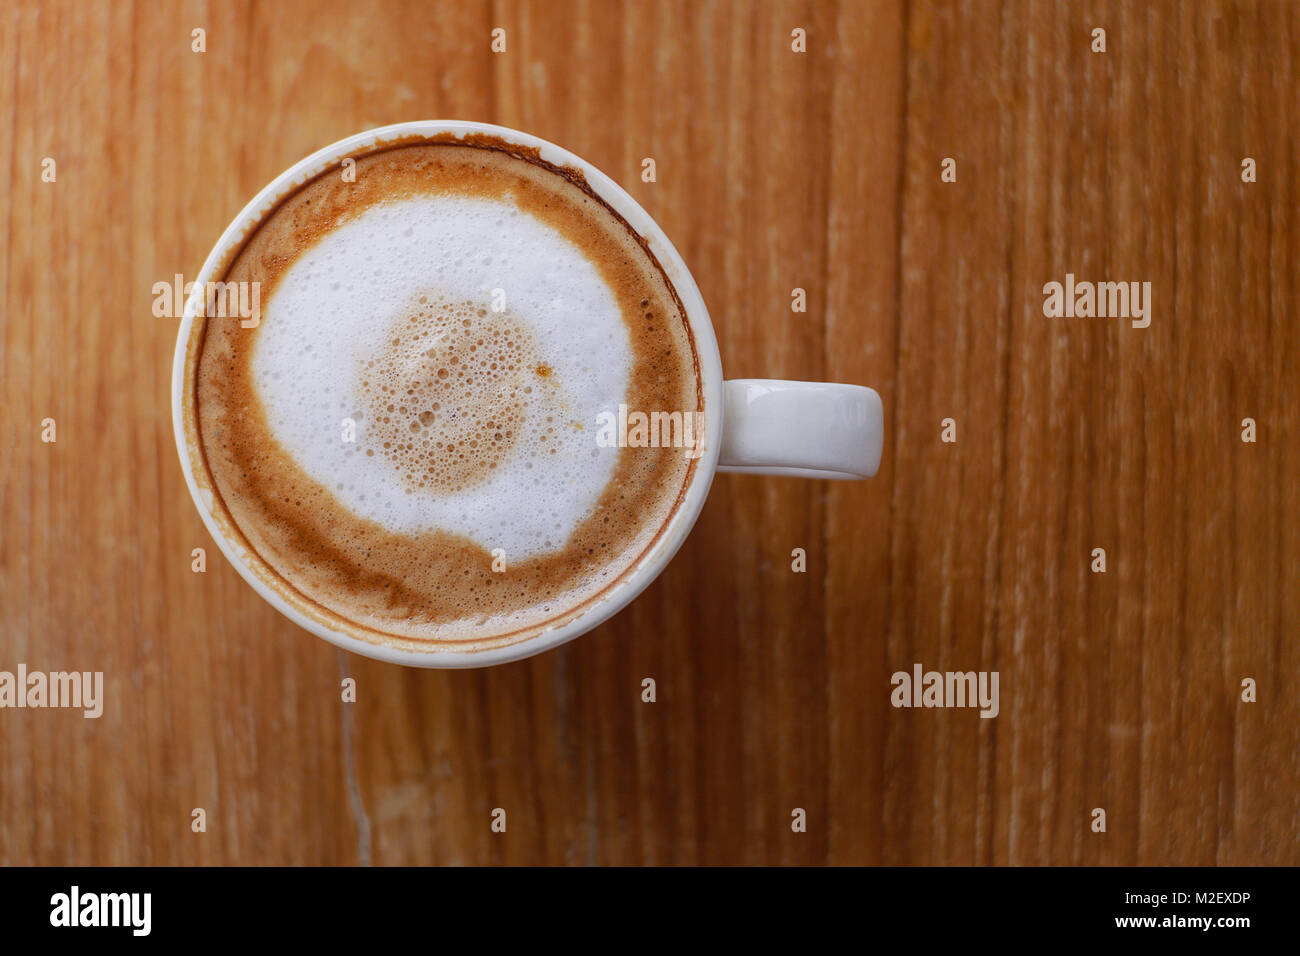 Caffè latte immagini e fotografie stock ad alta risoluzione - Alamy